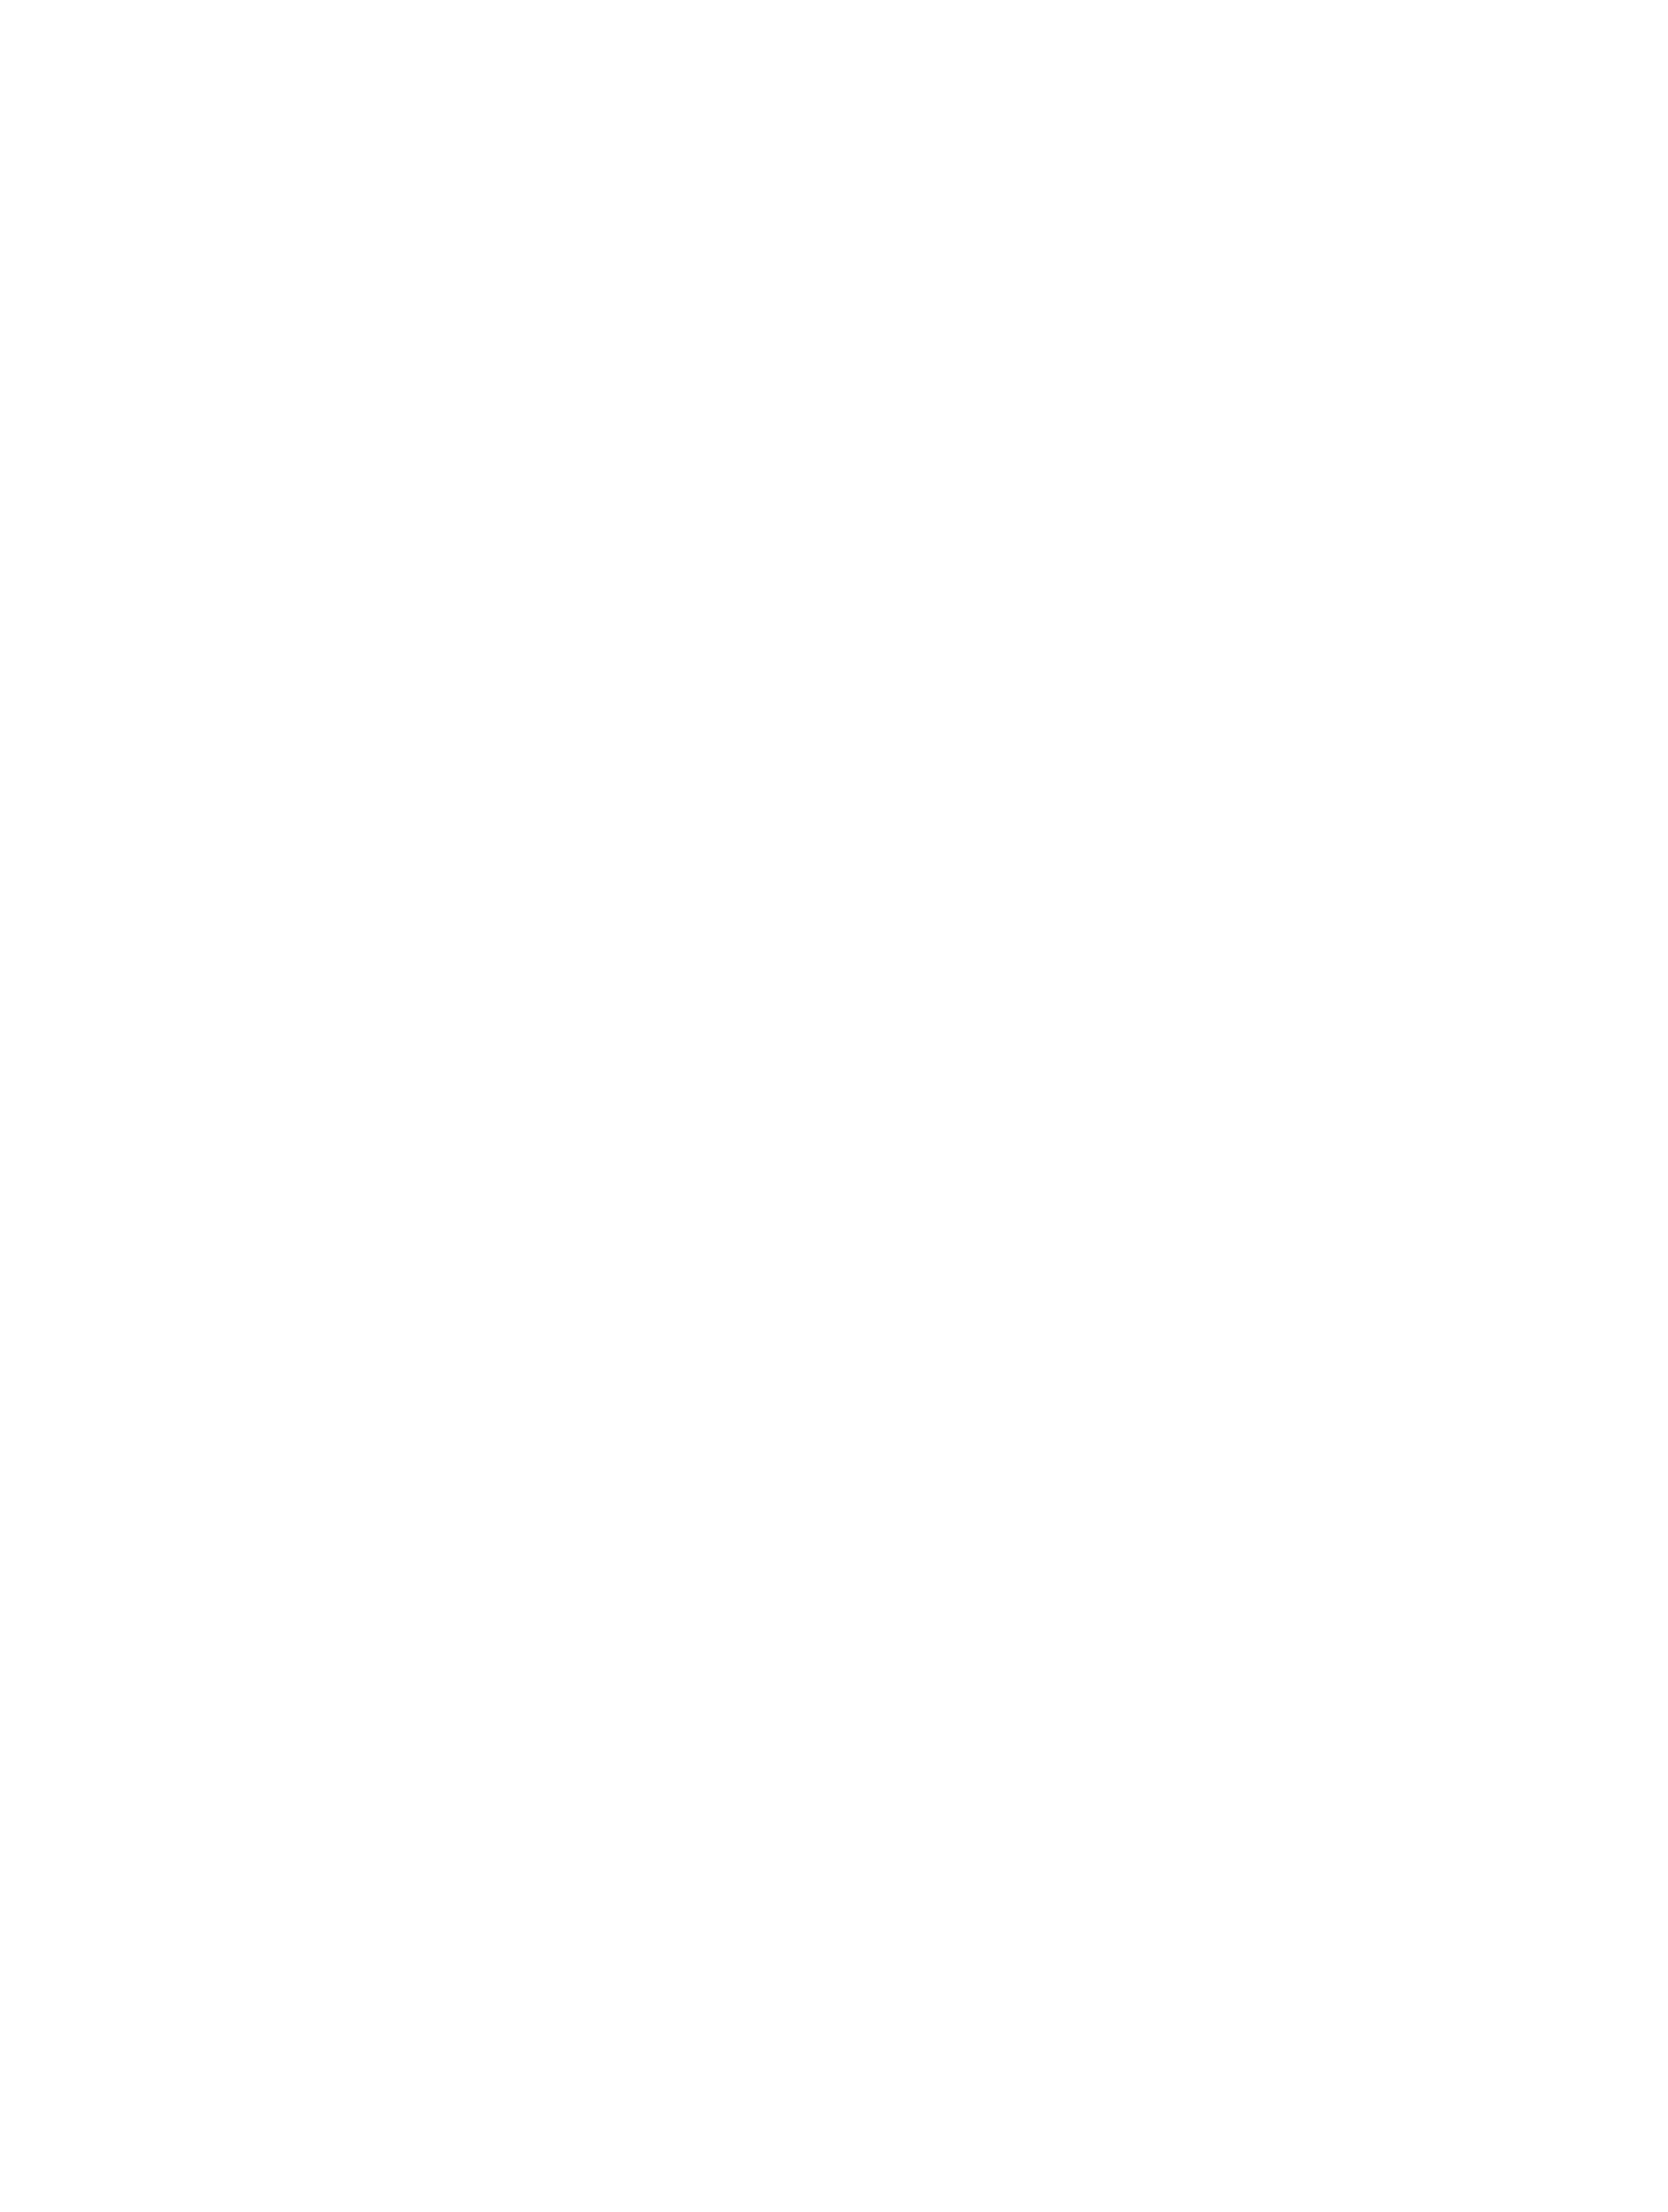 Body of Art logo